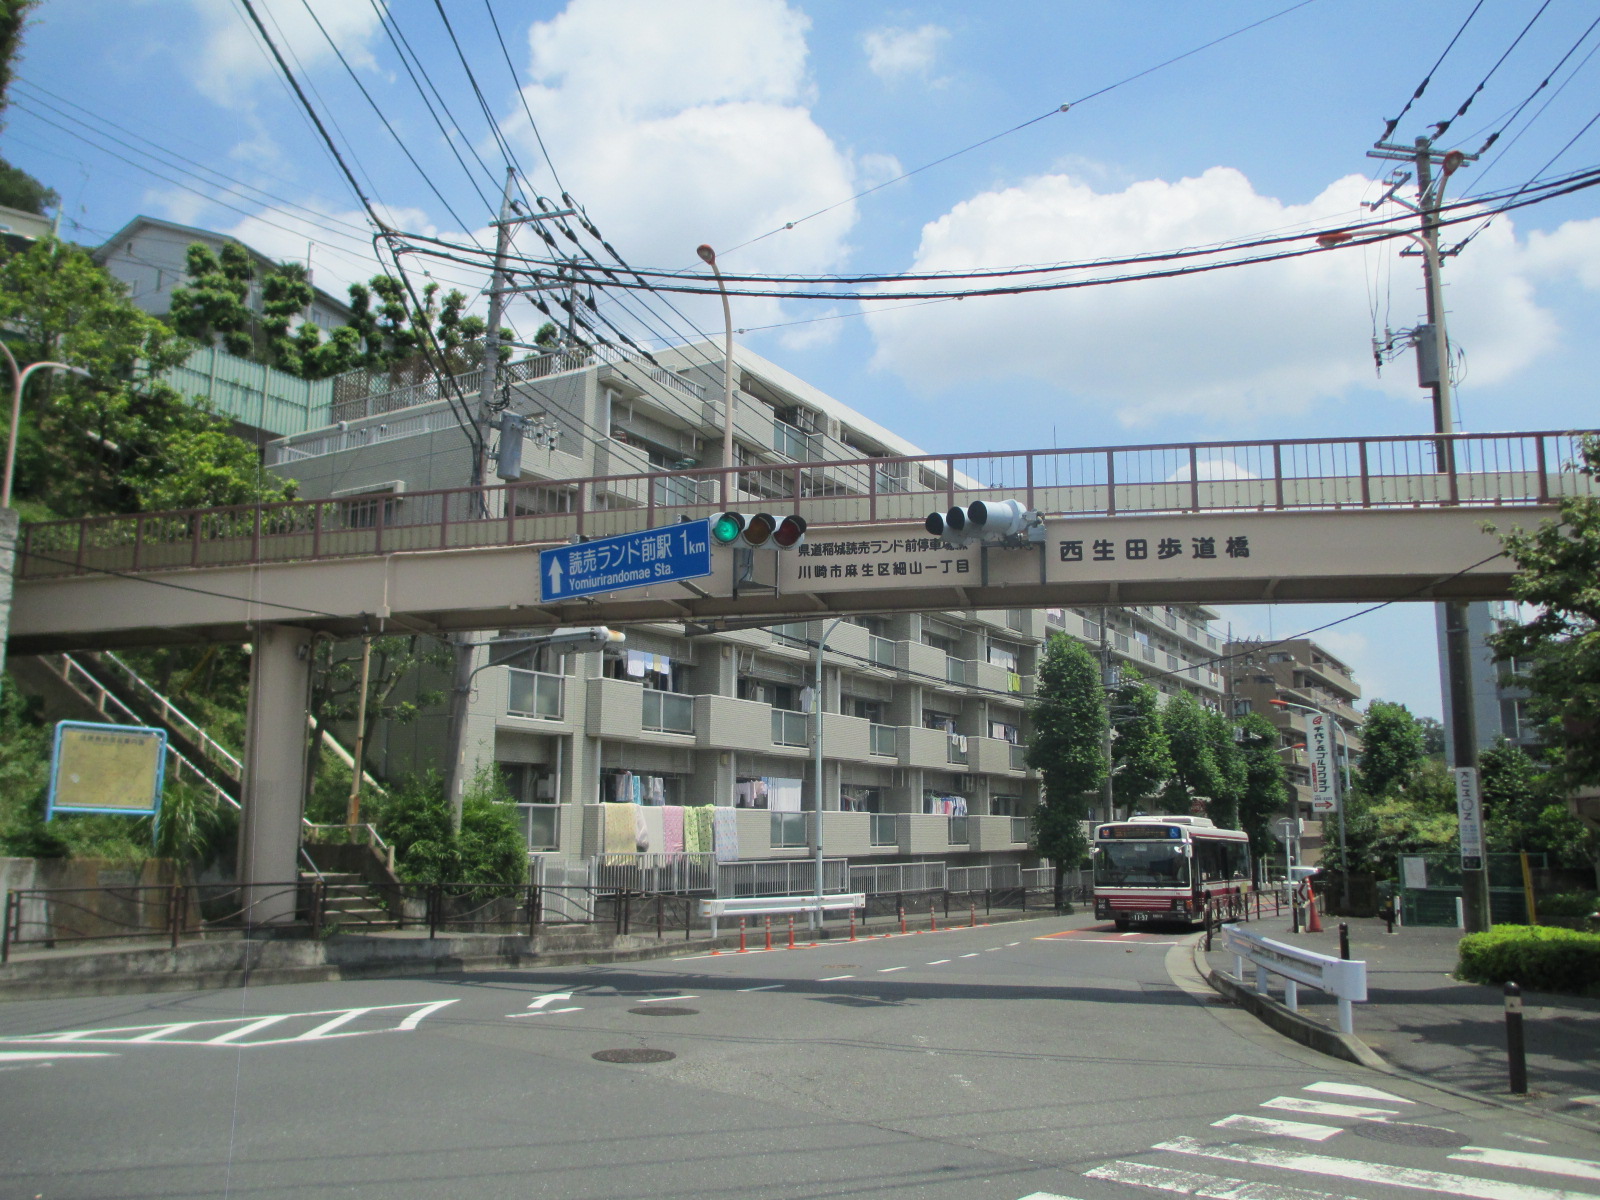 西生田歩道橋の写真